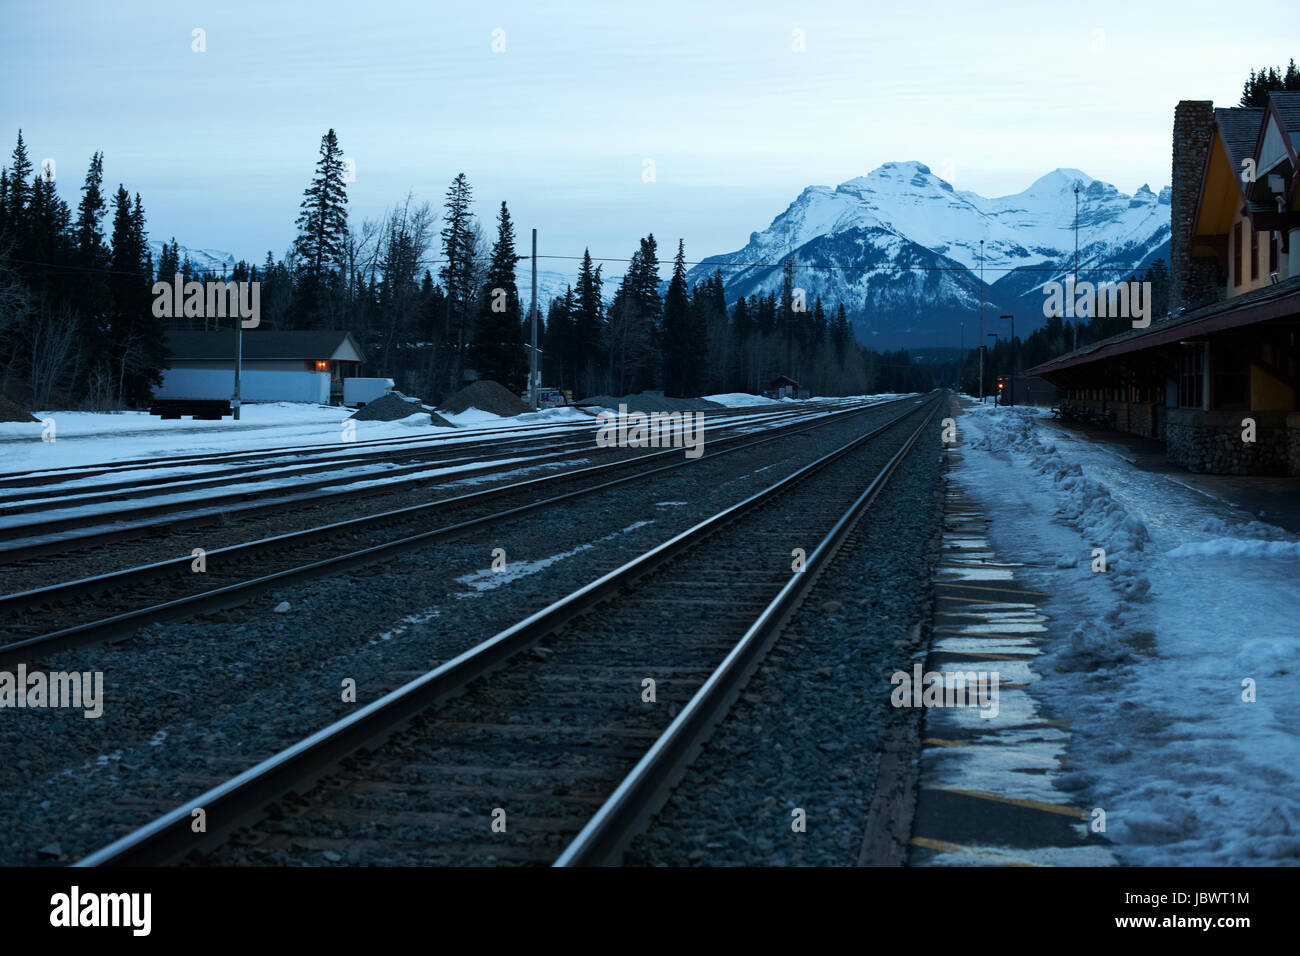 Perspectiva decreciente de las vías de ferrocarril, de Banff, Canadá Foto de stock